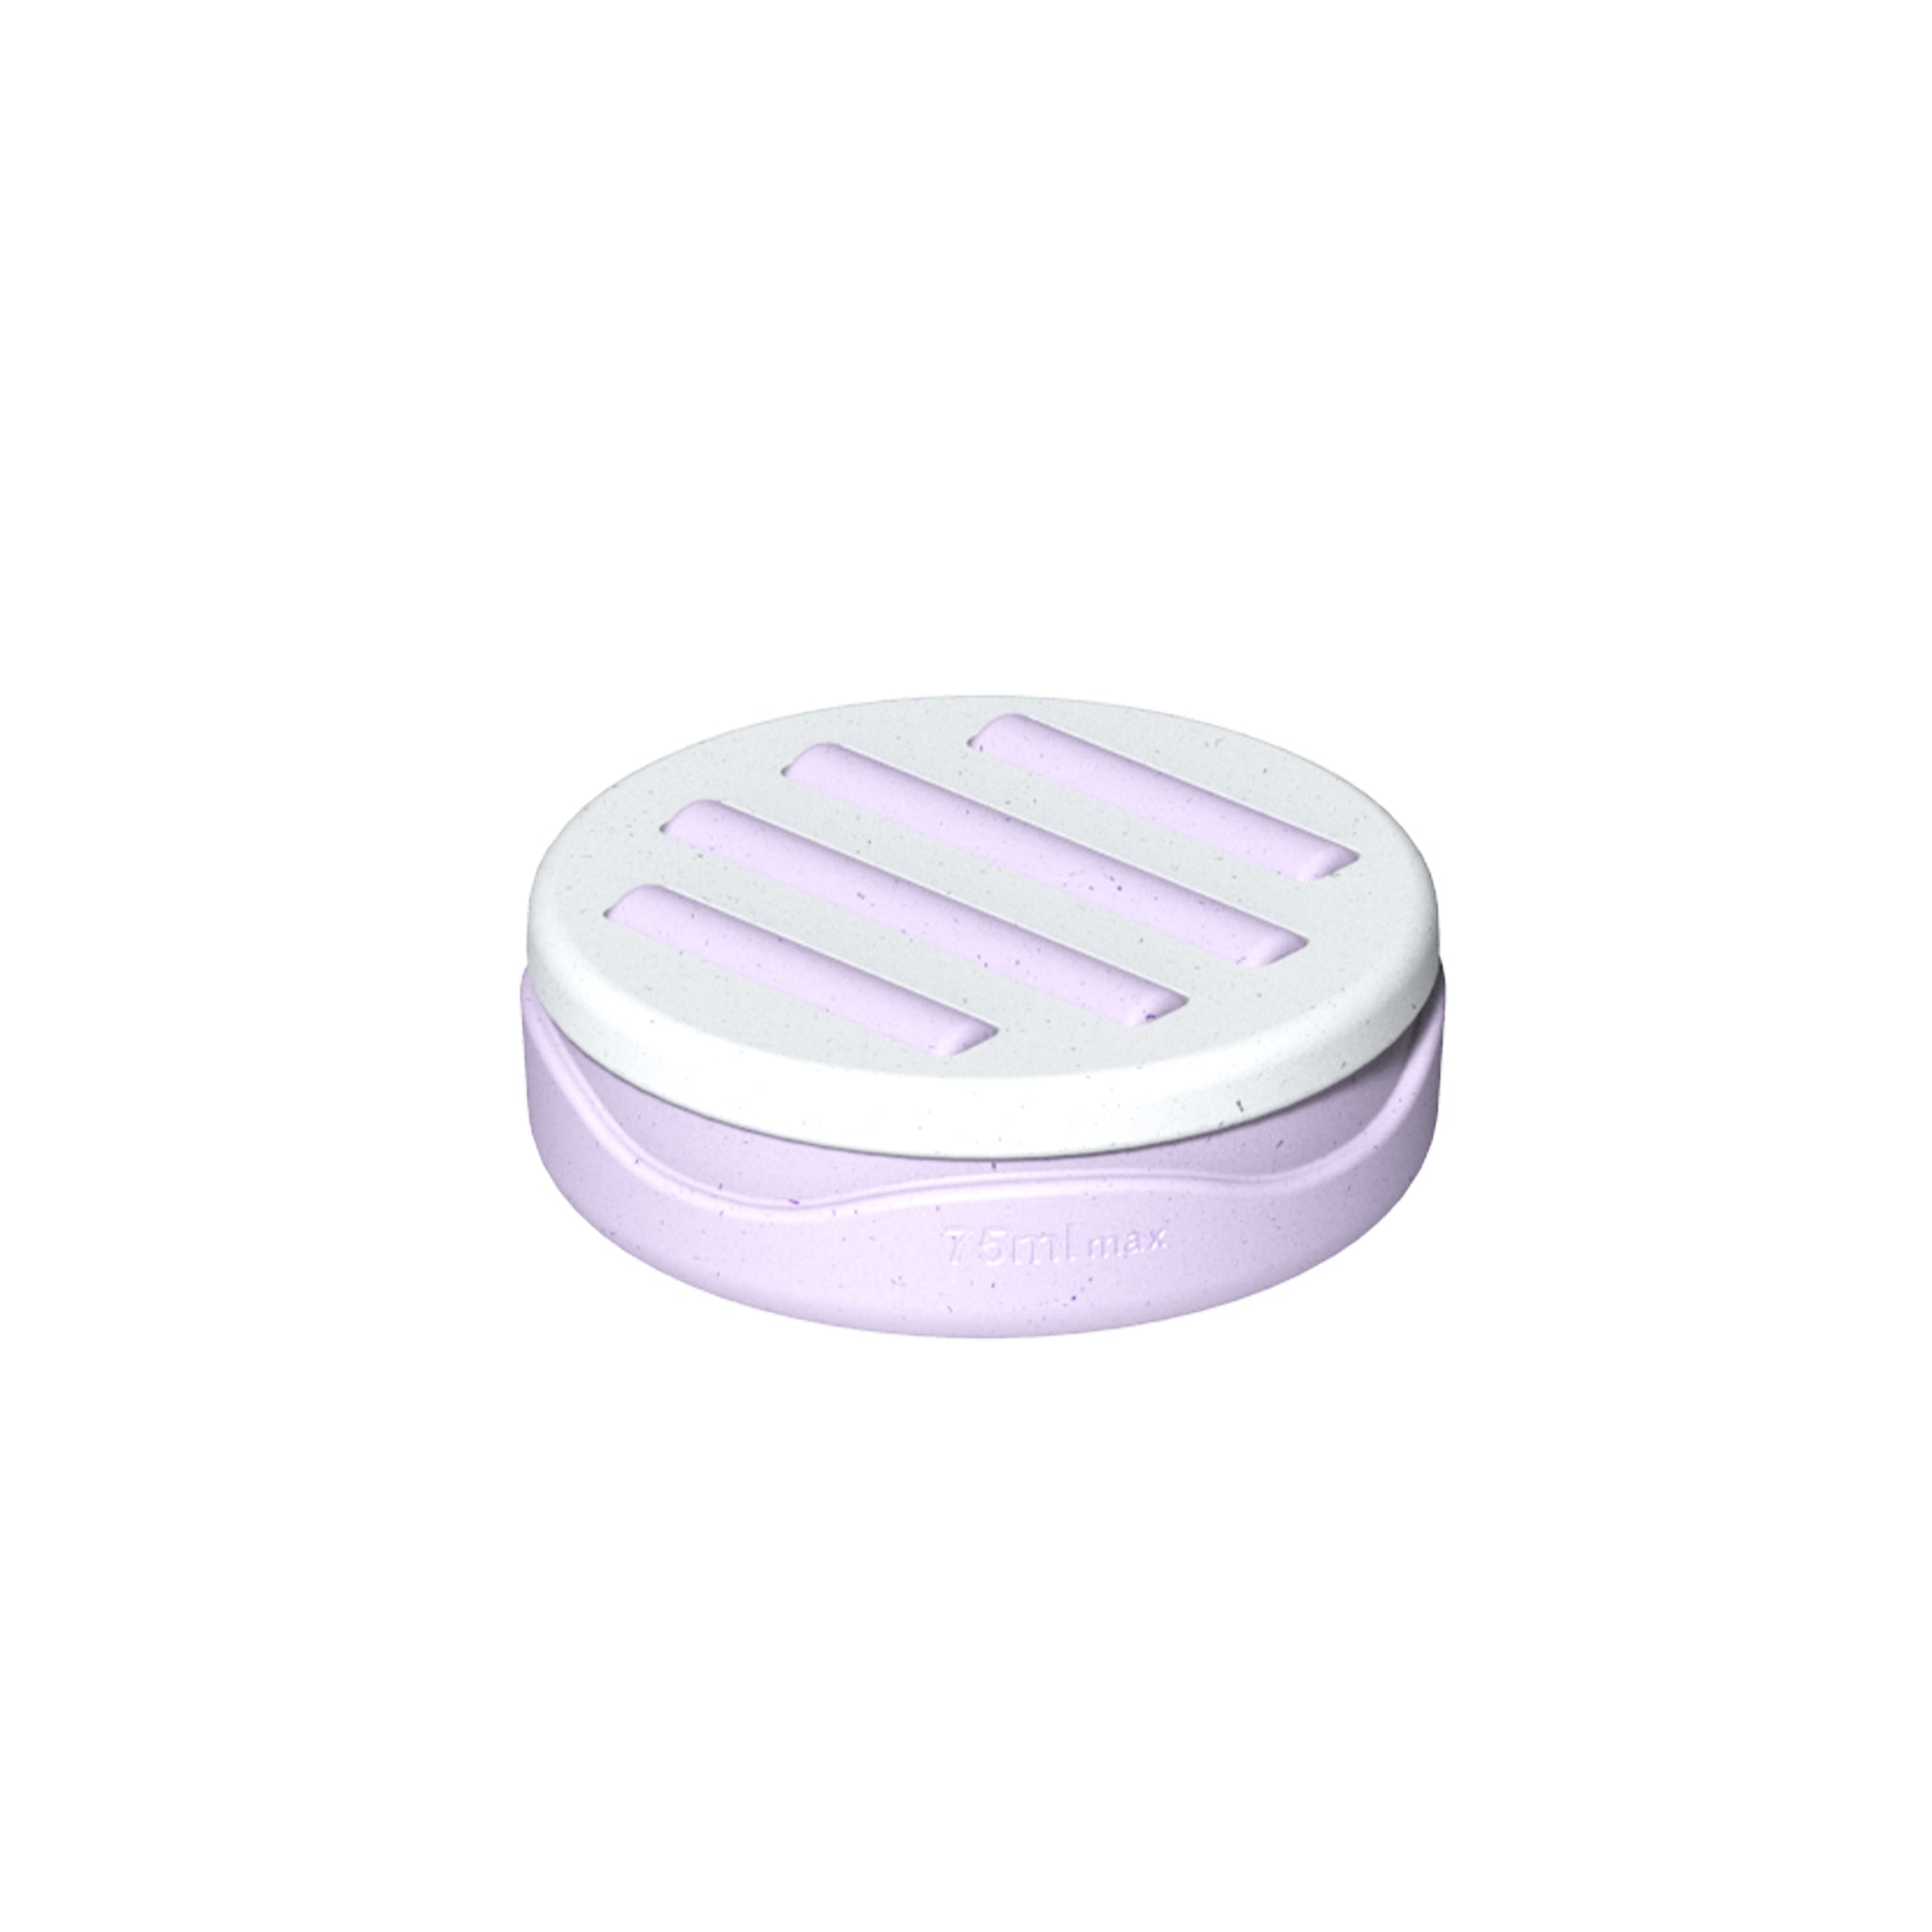 Contenant déodorant lilas avec couvercle blanc sur fond blanc